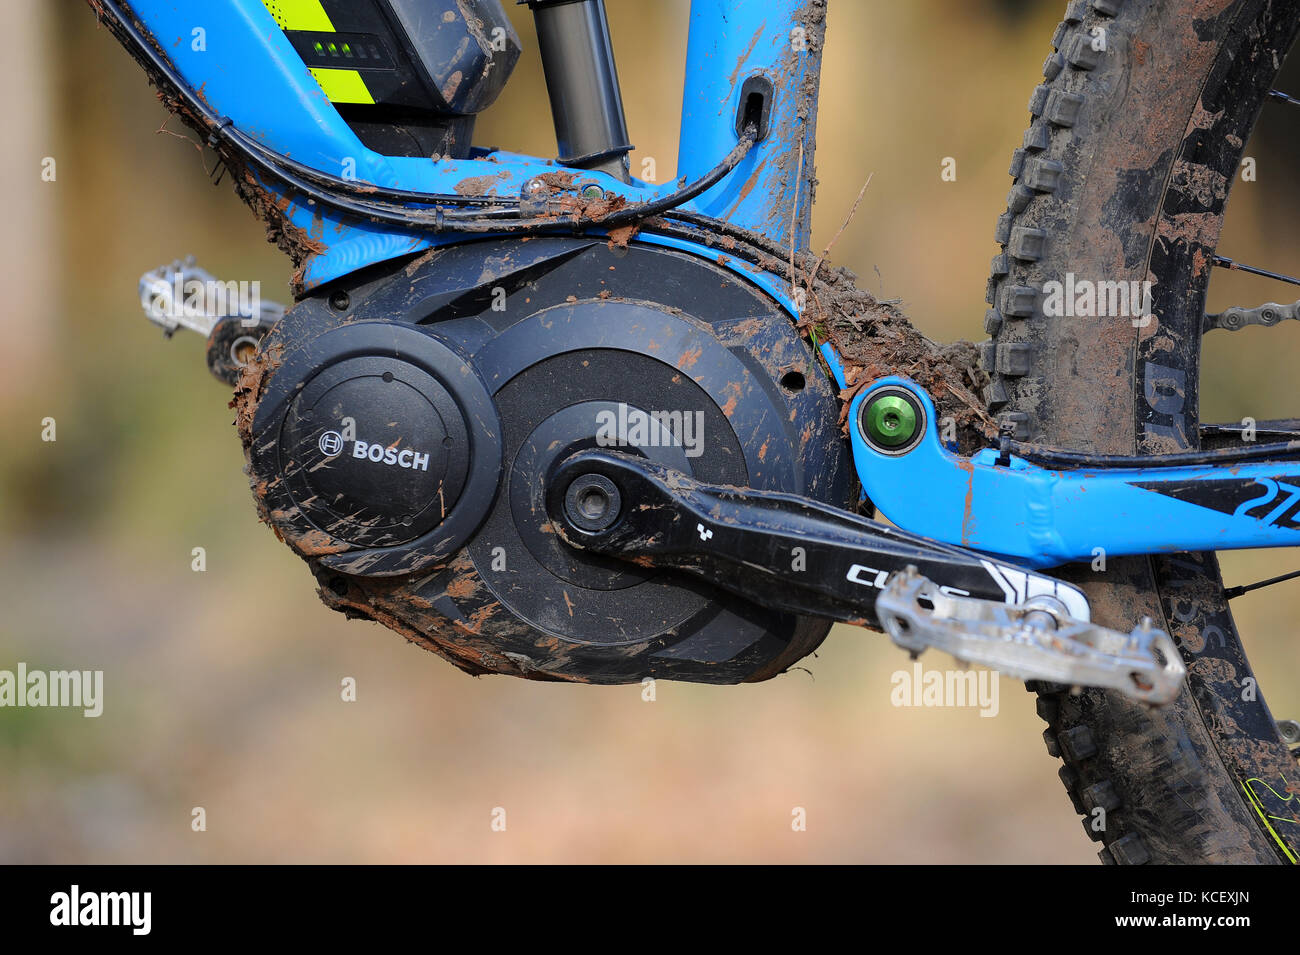 Ein Pedal unterstützen E-Bike Mountainbike mit einem Bosch Elektromotor  Stockfotografie - Alamy